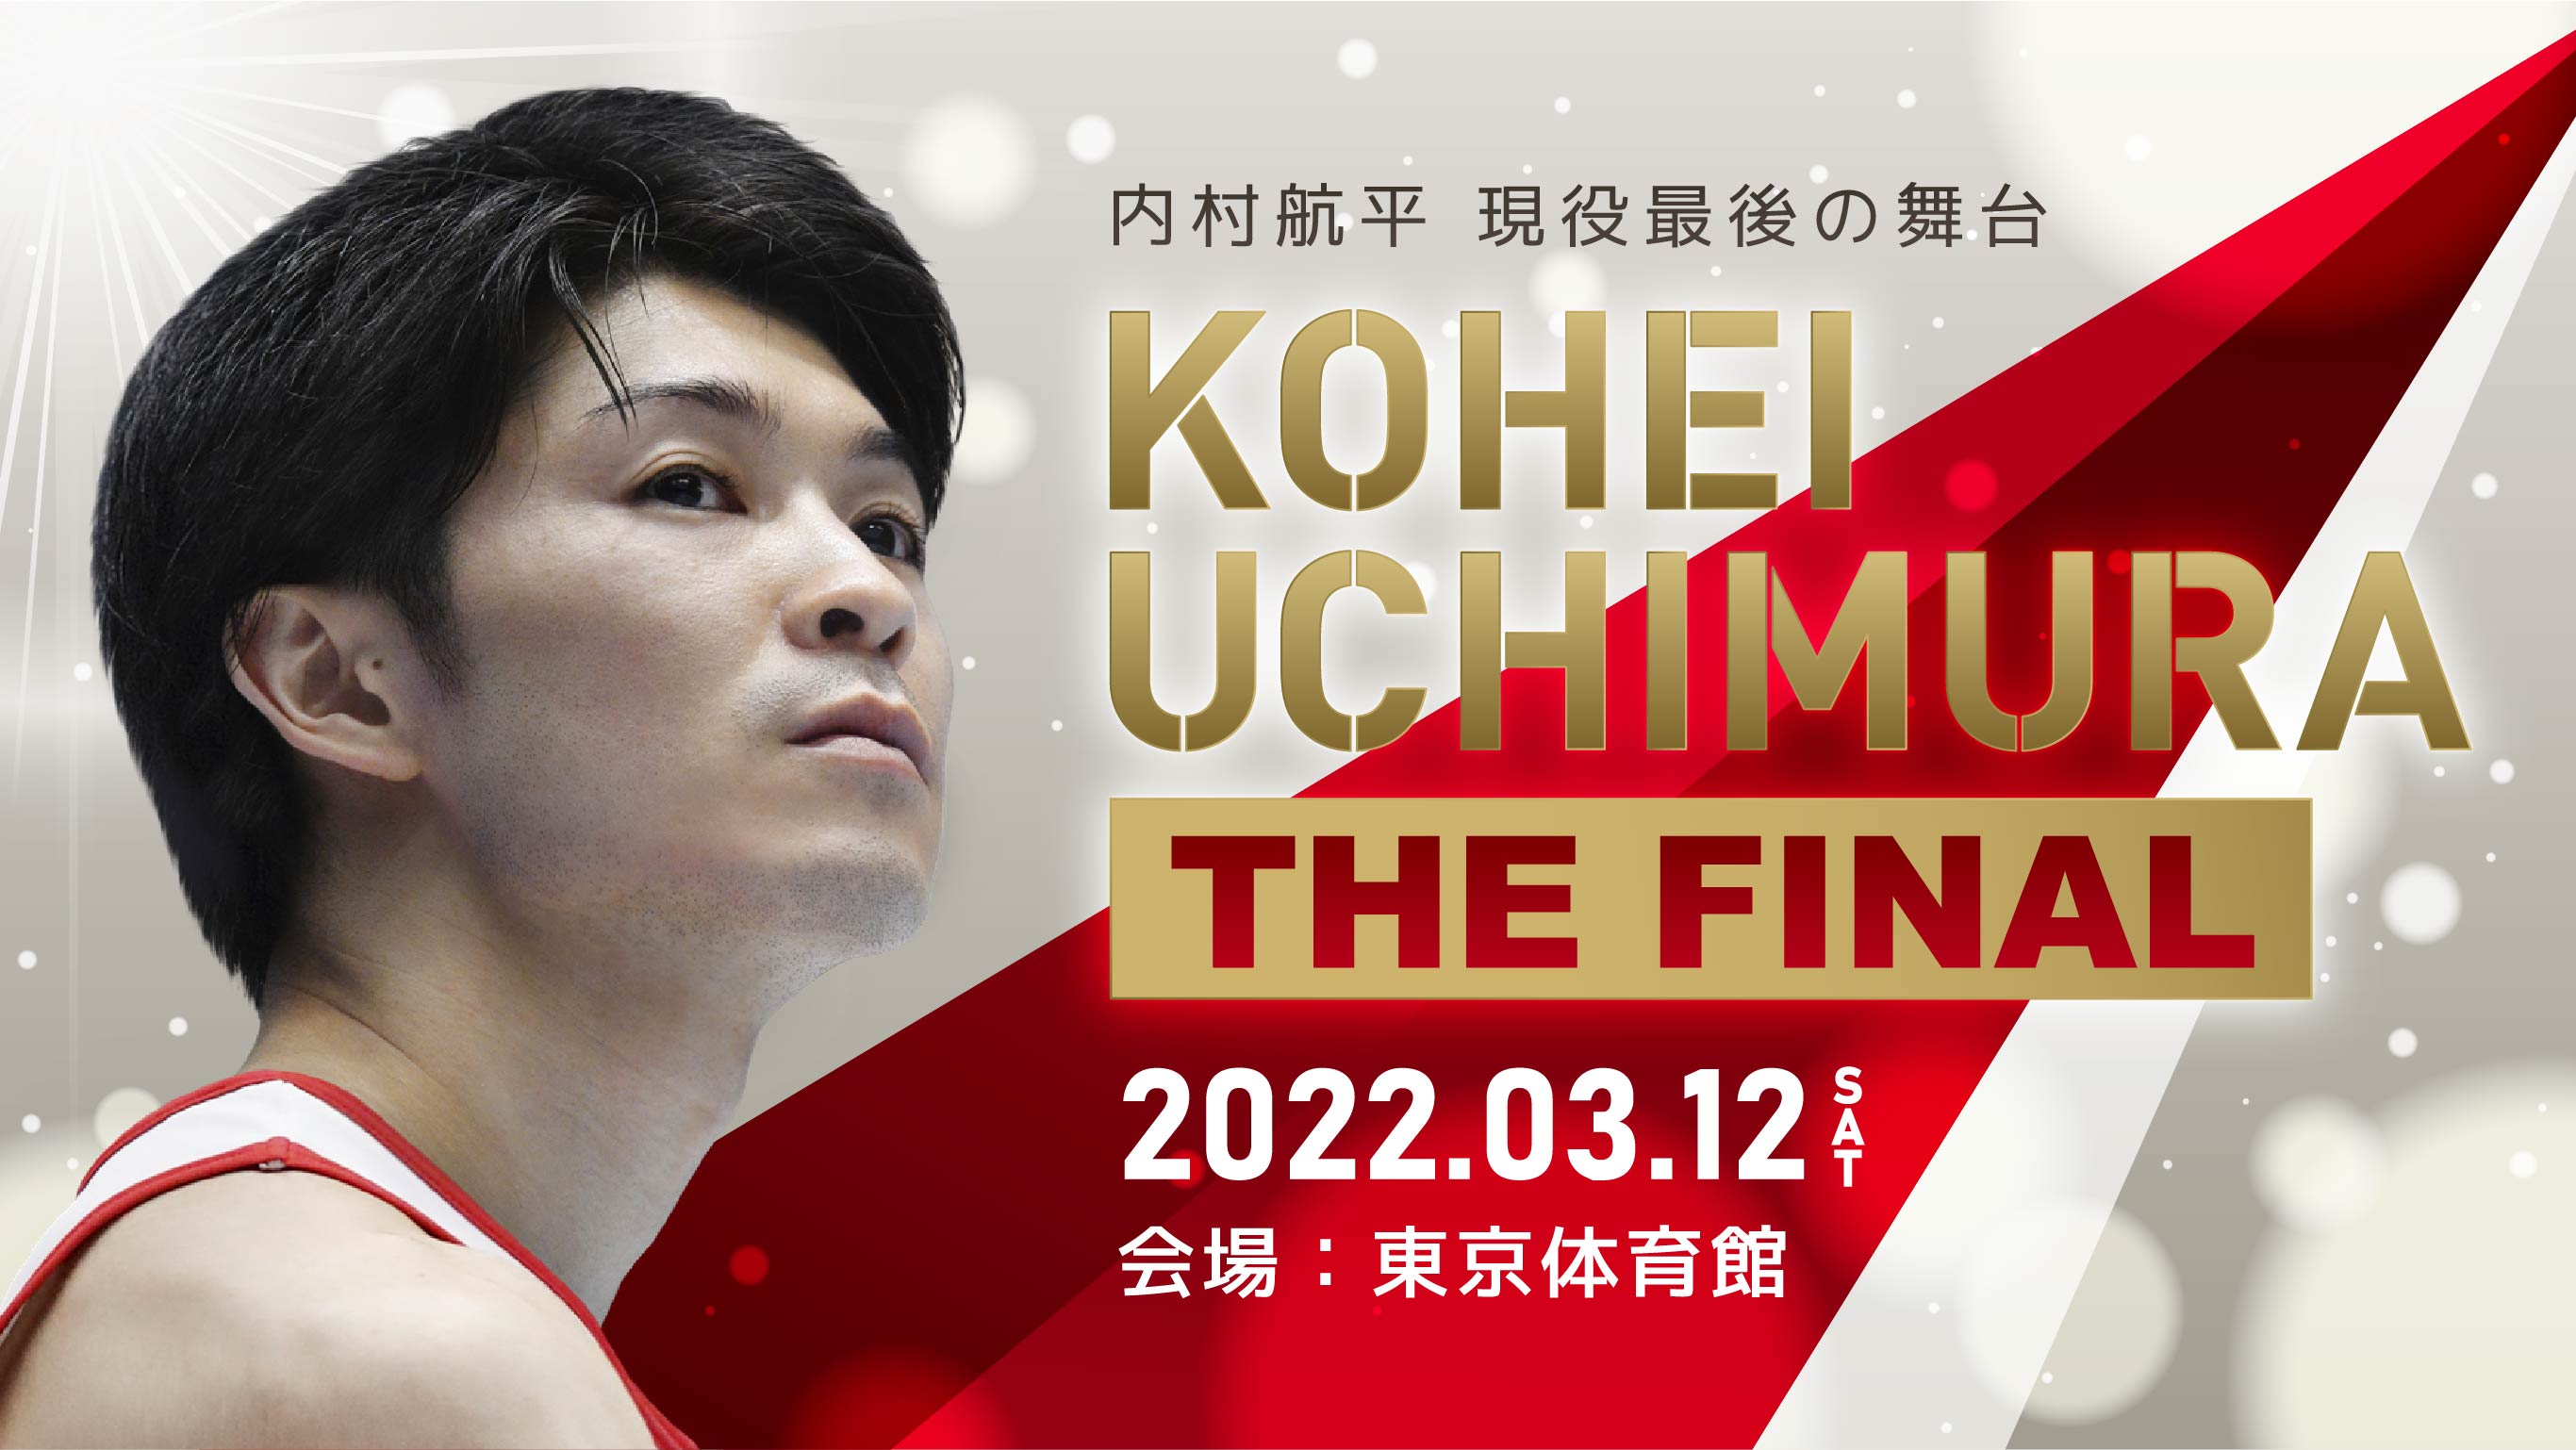 KOHEI UCHIMURA THE FINAL